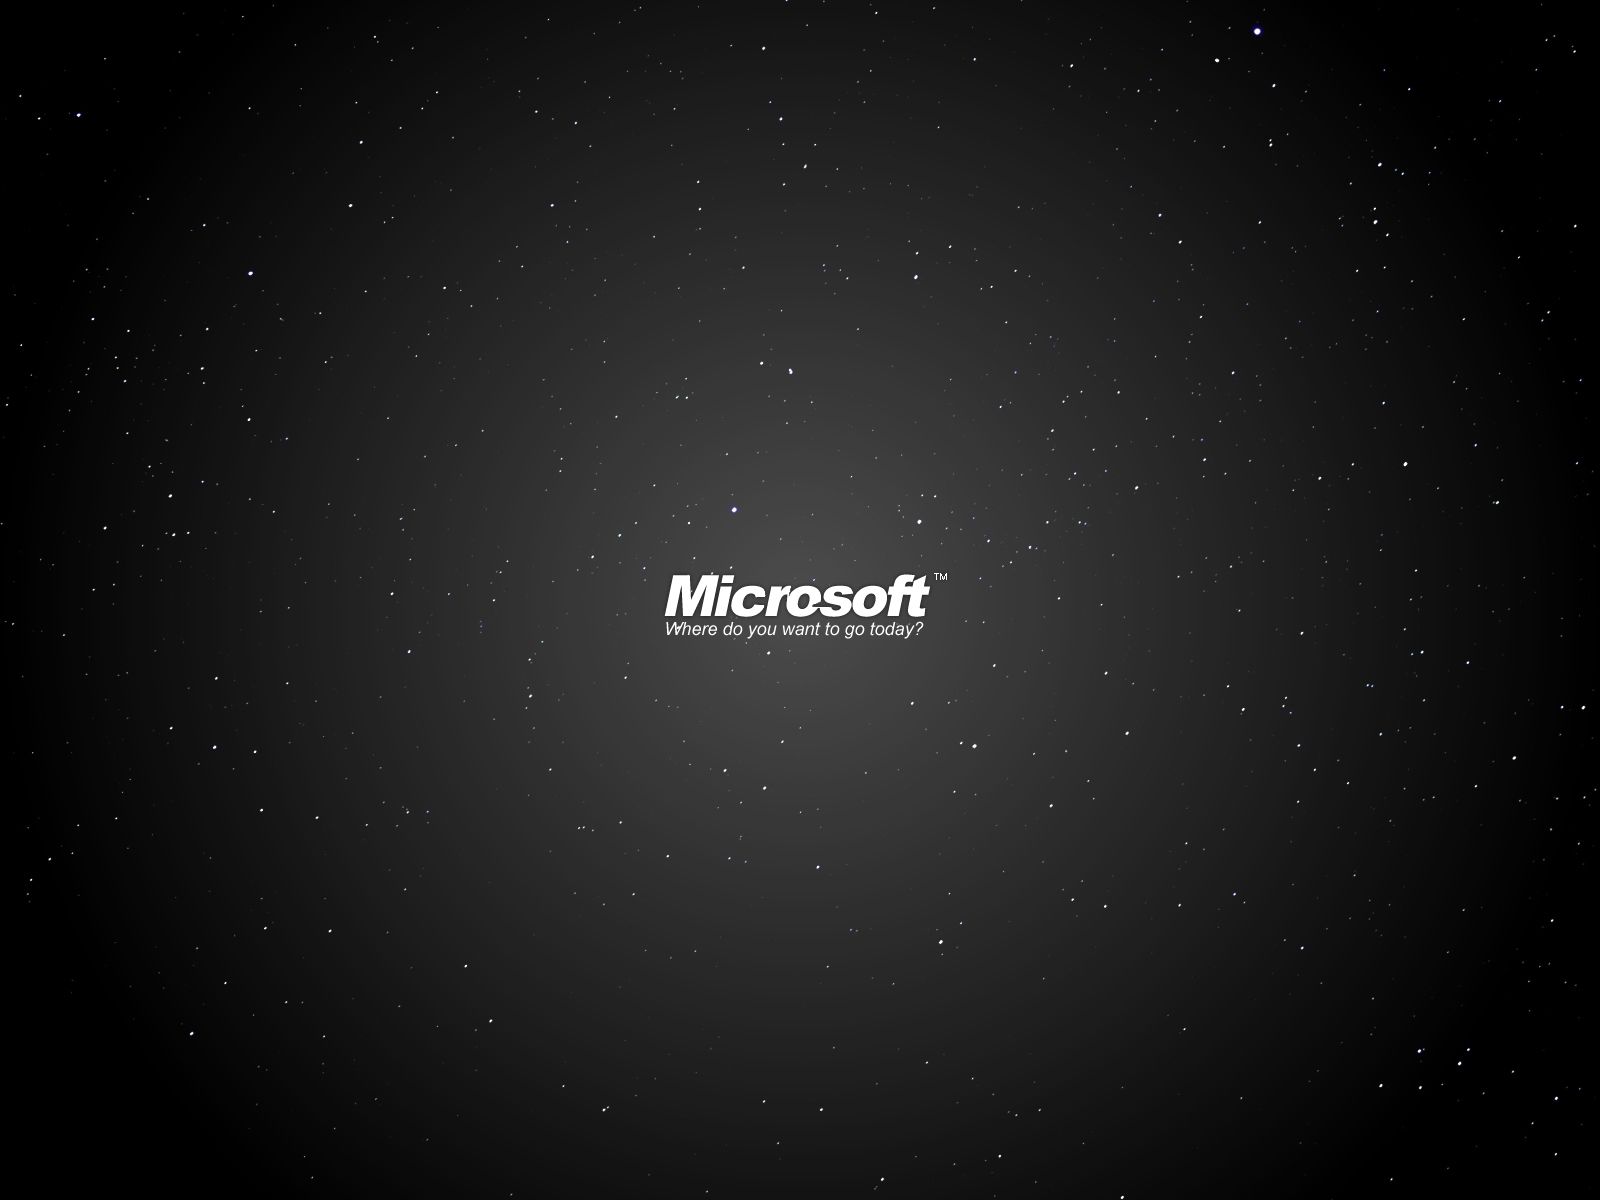 Free Microsoft Desktop Wallpaper